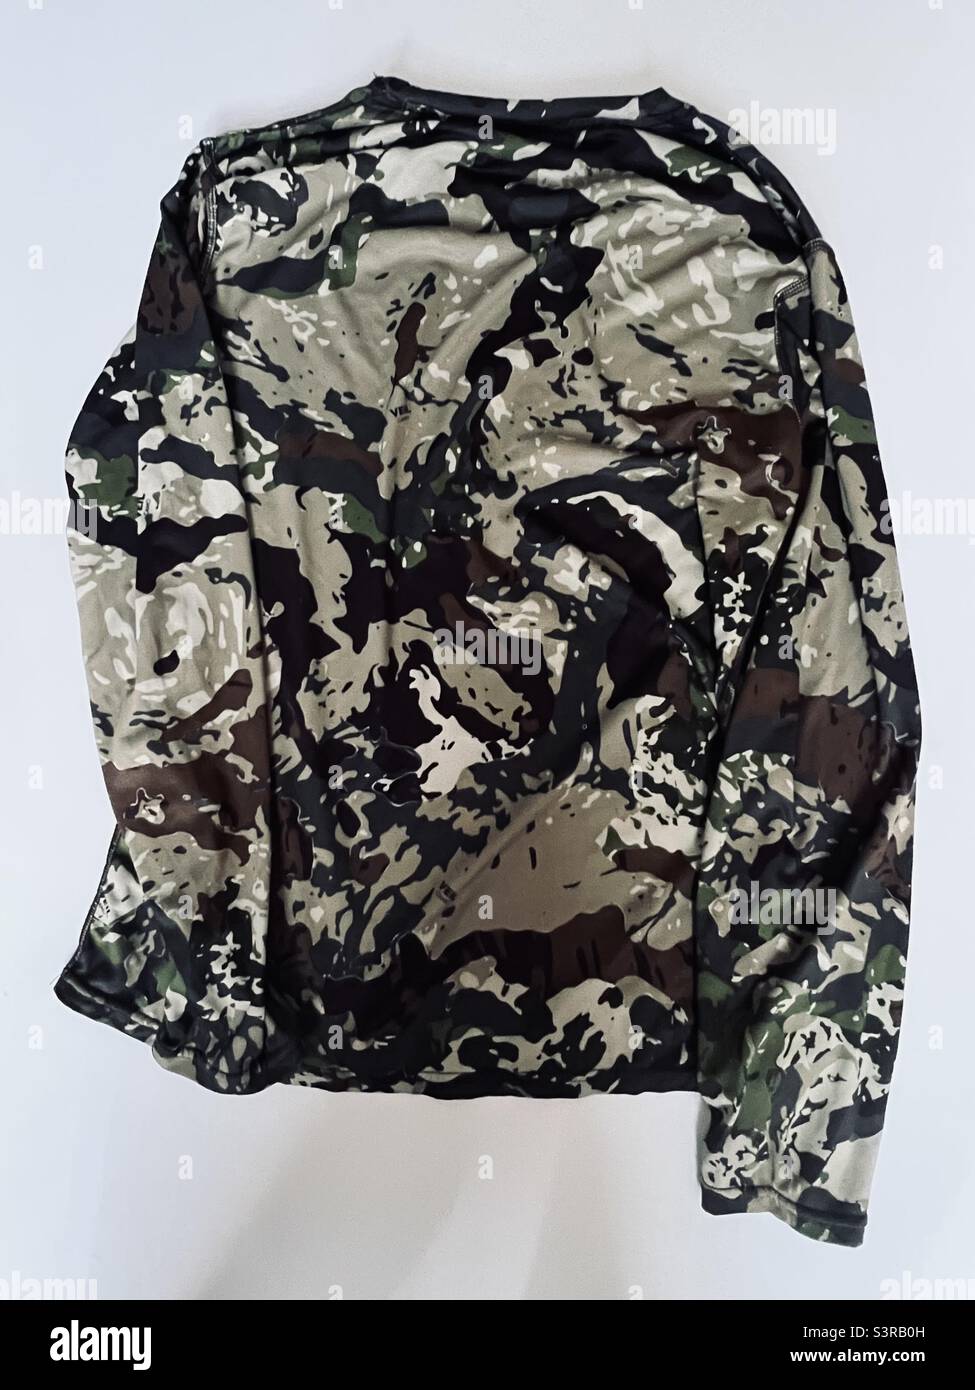 Camouflage long sleeve shirt Stock Photo